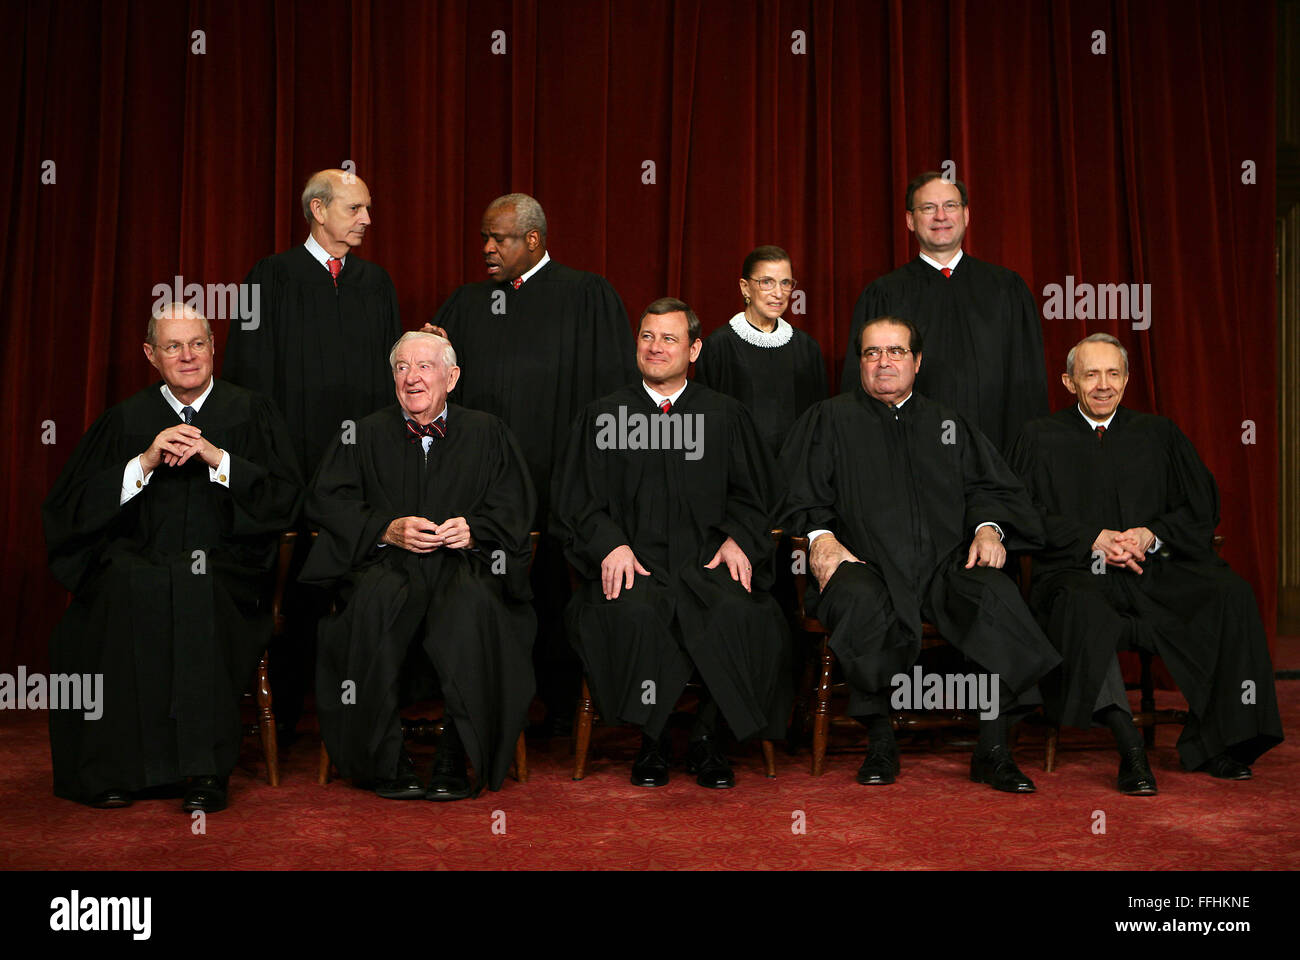 Washington, DC - El 3 de marzo, 2006 - 2006 Retrato de clase de los jueces de la Corte Suprema de los Estados Unidos adoptada el 3 de marzo de 2006, en el edificio de la Corte Suprema de los Estados Unidos en Washington, DC, sentados en primera fila, de izquierda a derecha son: Asociar el juez Anthony M. Kennedy, Juez Asociado John Paul Stevens, Jefe de Justicia de los Estados Unidos John G. Roberts, Jr., juez Antonin Scalia, y asociar el juez David Souter. De pie, de izquierda a derecha, en la fila superior, son los siguientes: Asociar el Juez Stephen Breyer, Juez Clarence Thomas, asociar a la Juez Ruth Bader Ginsburg Foto de stock